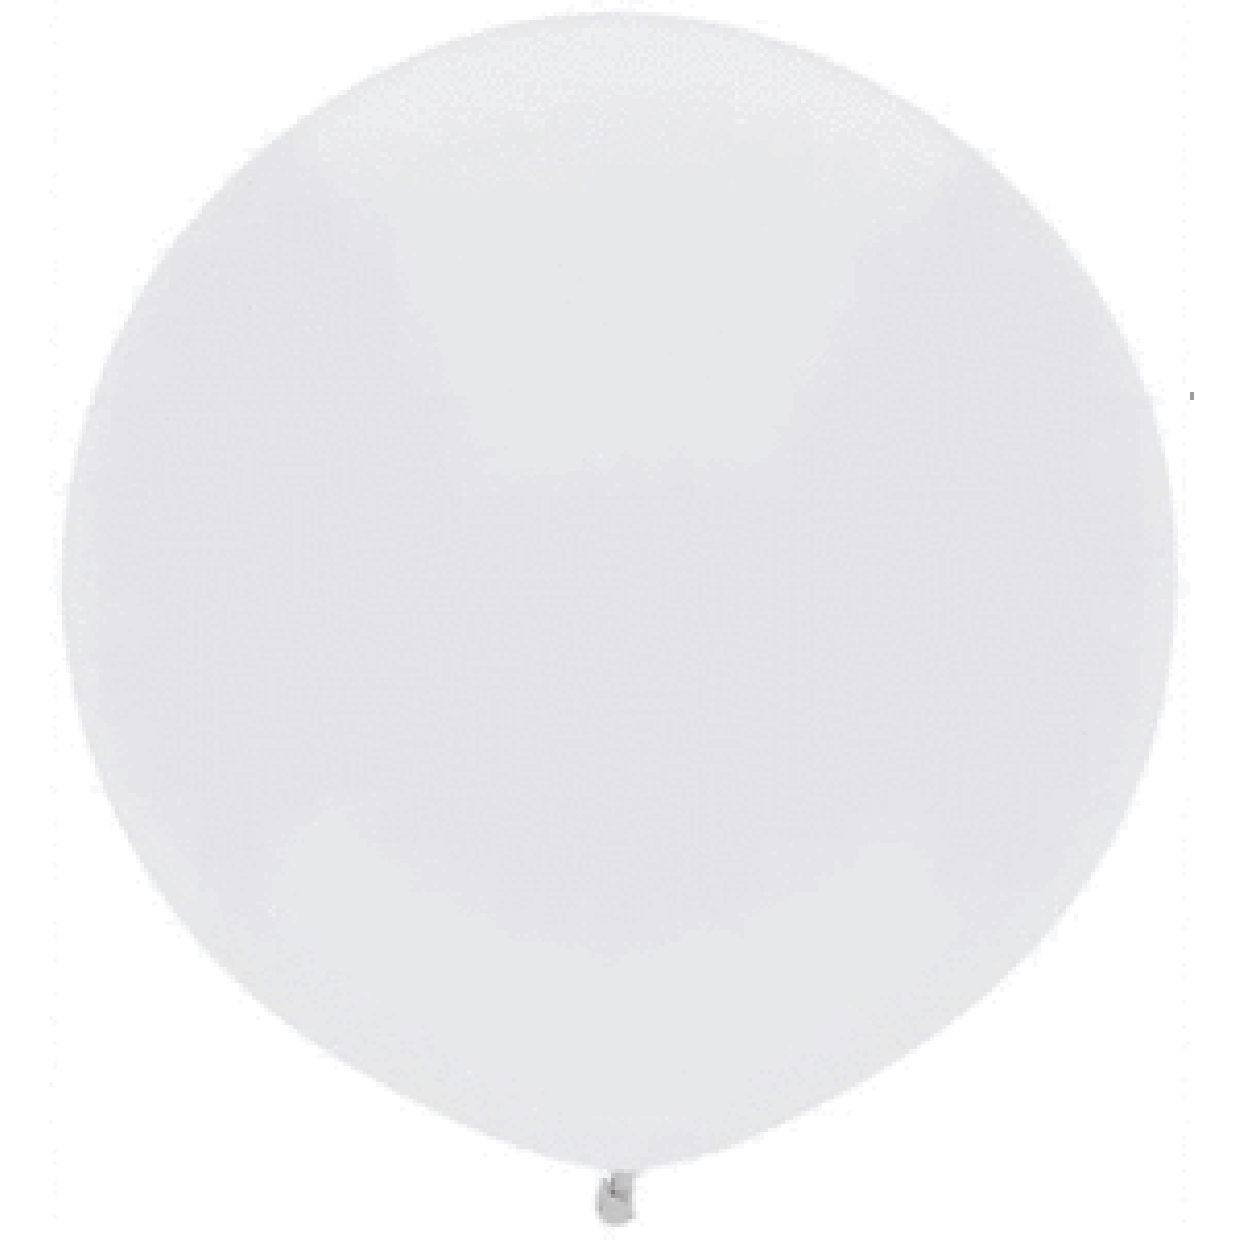 Bright White Round Latex Helium Balloon - 43cm